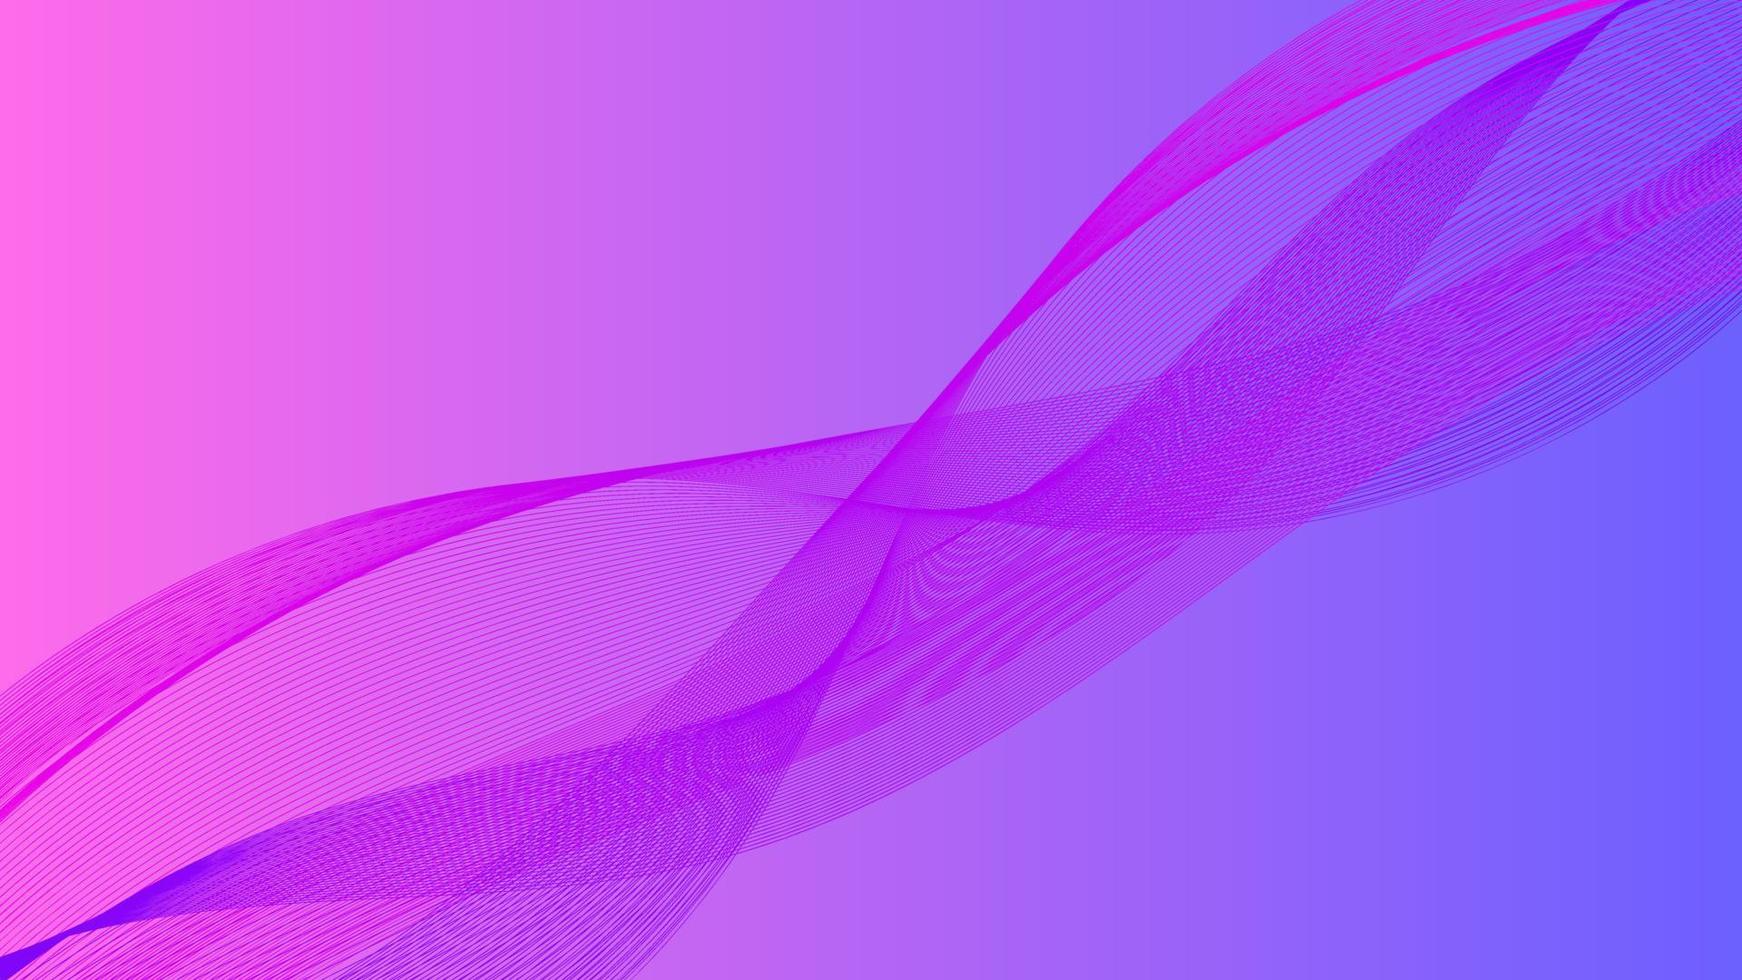 Farbverlauf blau lila Hintergrunddesign. abstrakter geometrischer hintergrund mit linienformen. Cooles Hintergrunddesign für Poster. eps10-Vektorillustration vektor